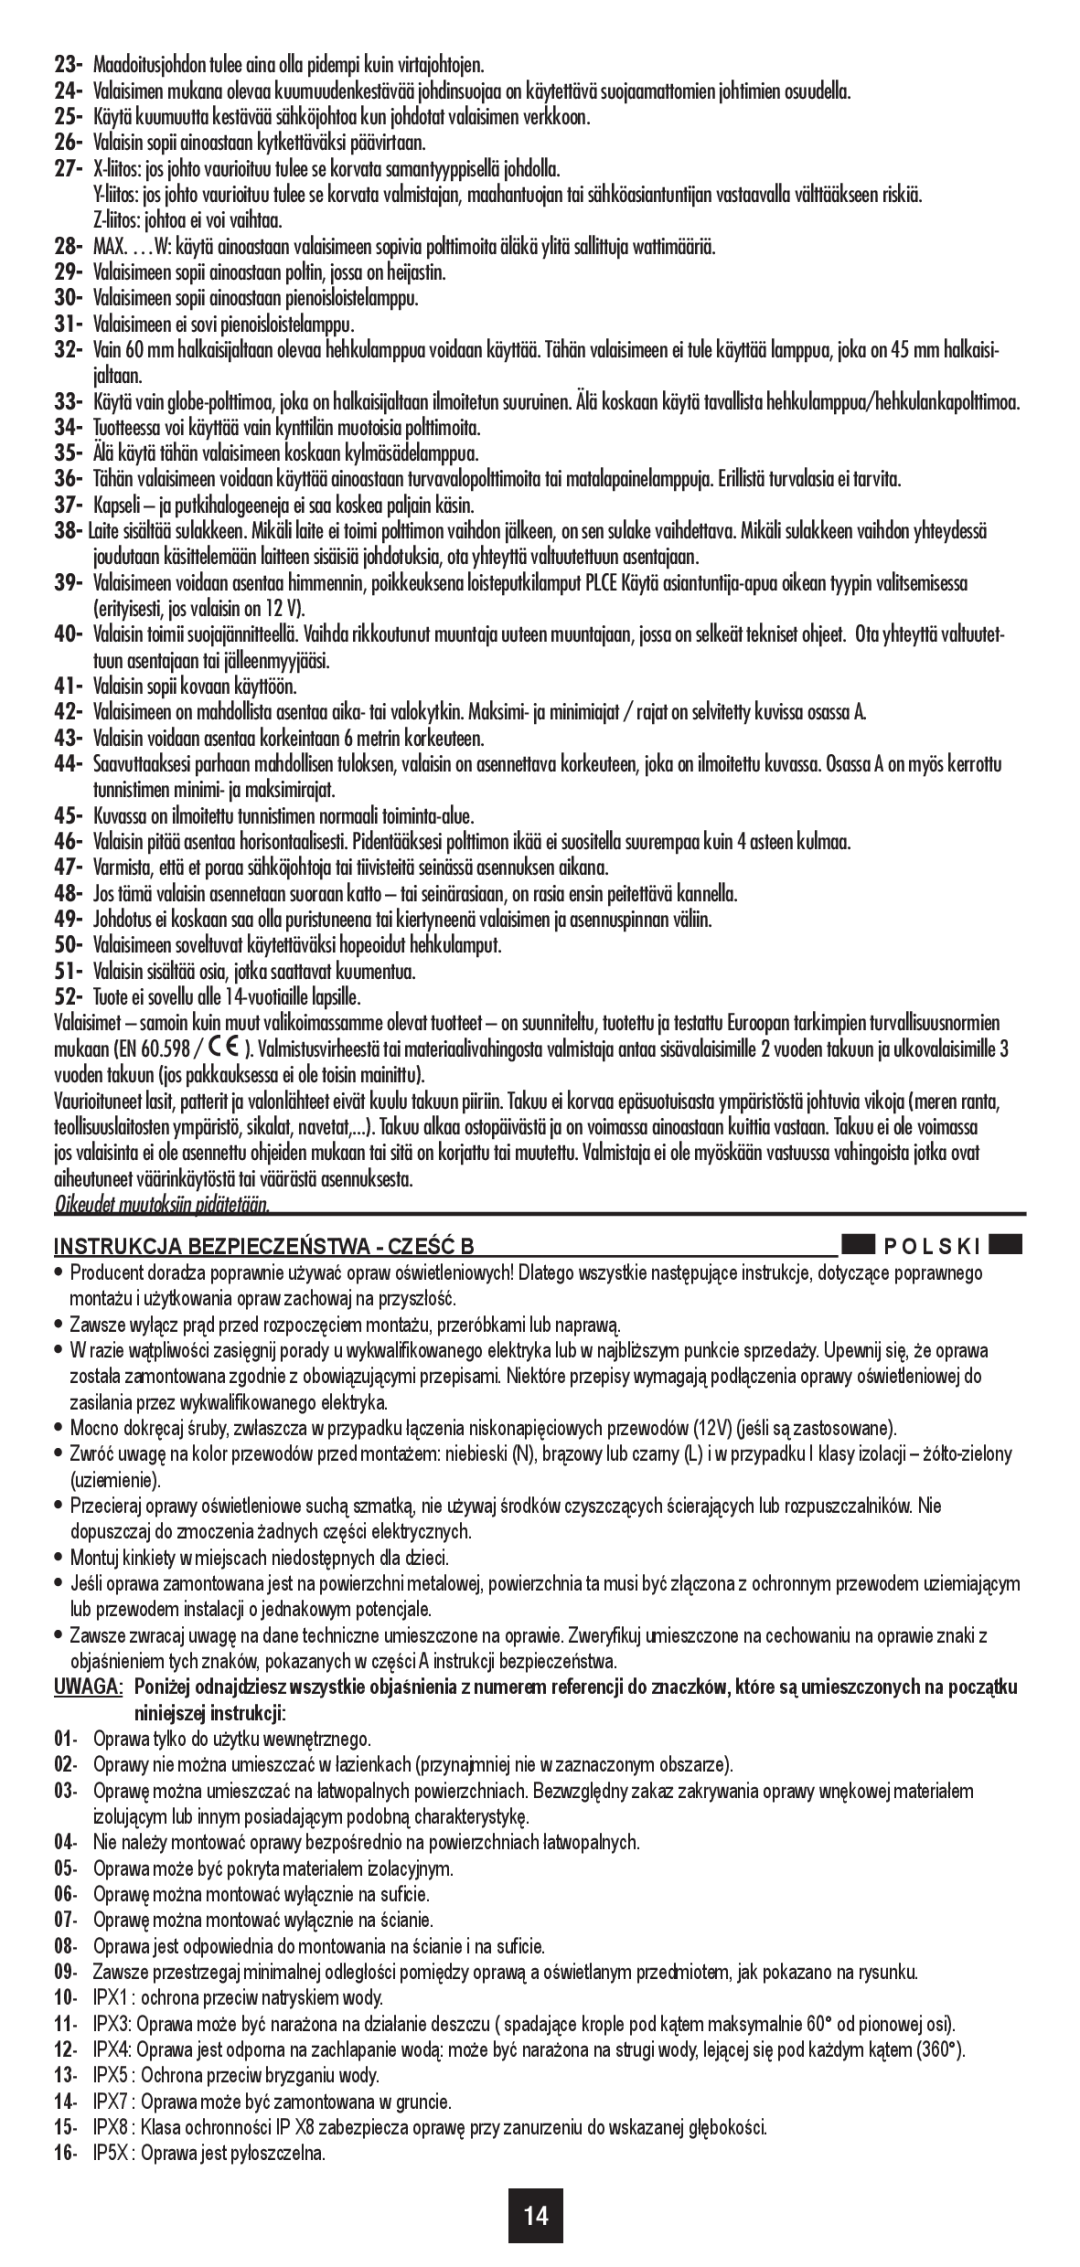 Philips 40339/**/16 user manual Oikeudet muutoksiin pidätetään, Instrukcja Bezpieczeństwa - Cześć B 